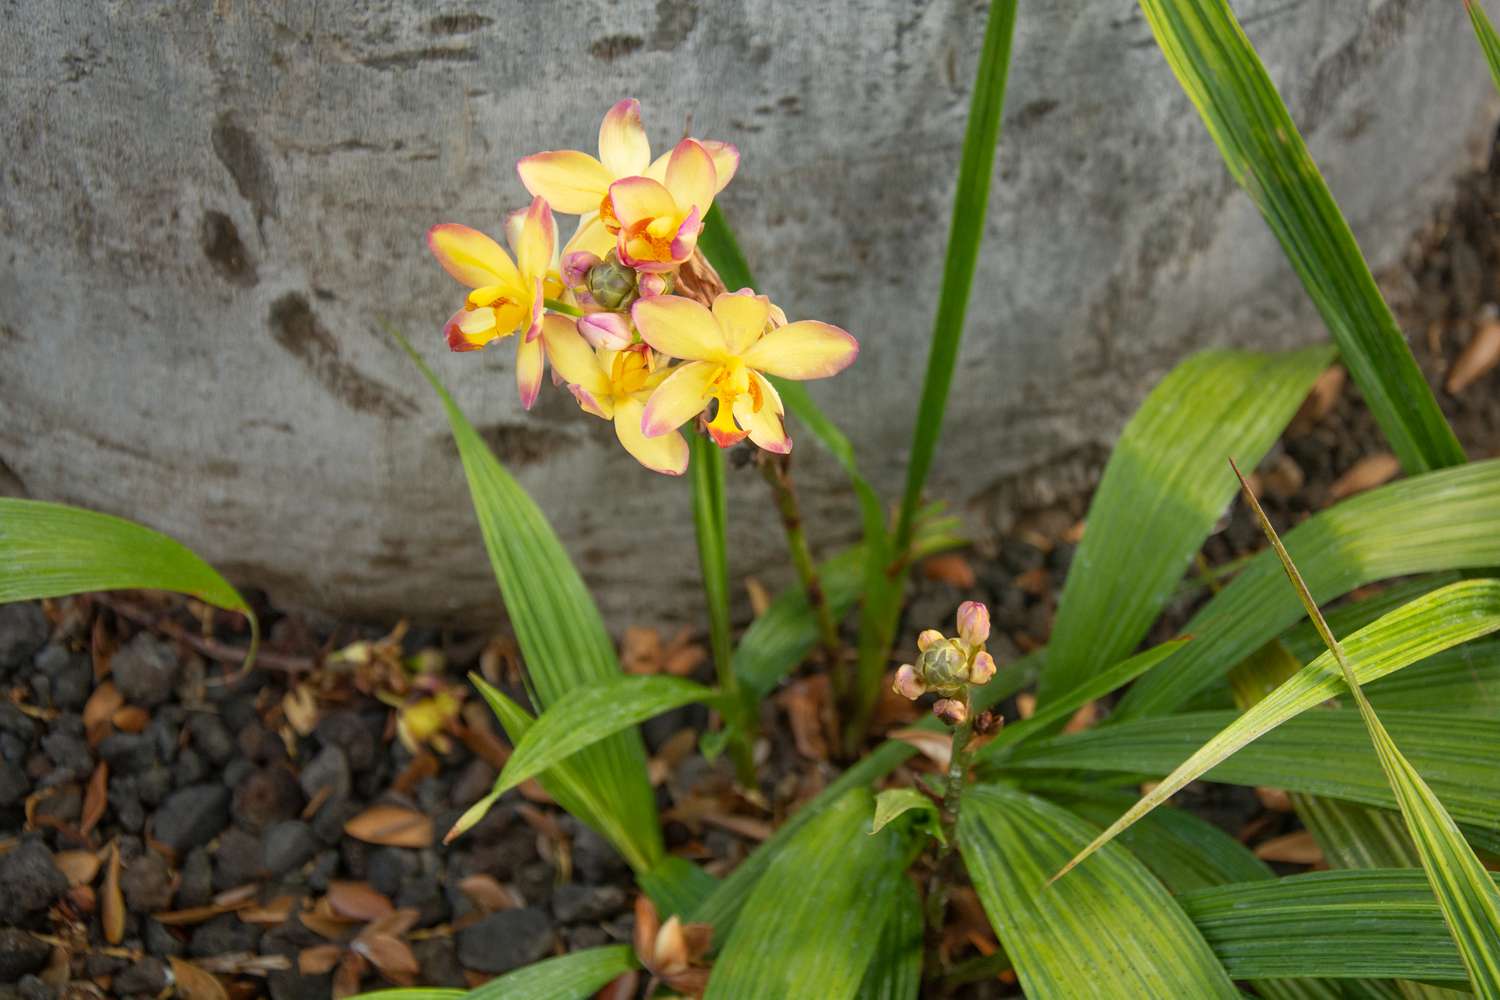 Spathoglottis-Orchideen mit gelben Blüten mit rosa Spitzen, umgeben von langen dicken Blattspreiten